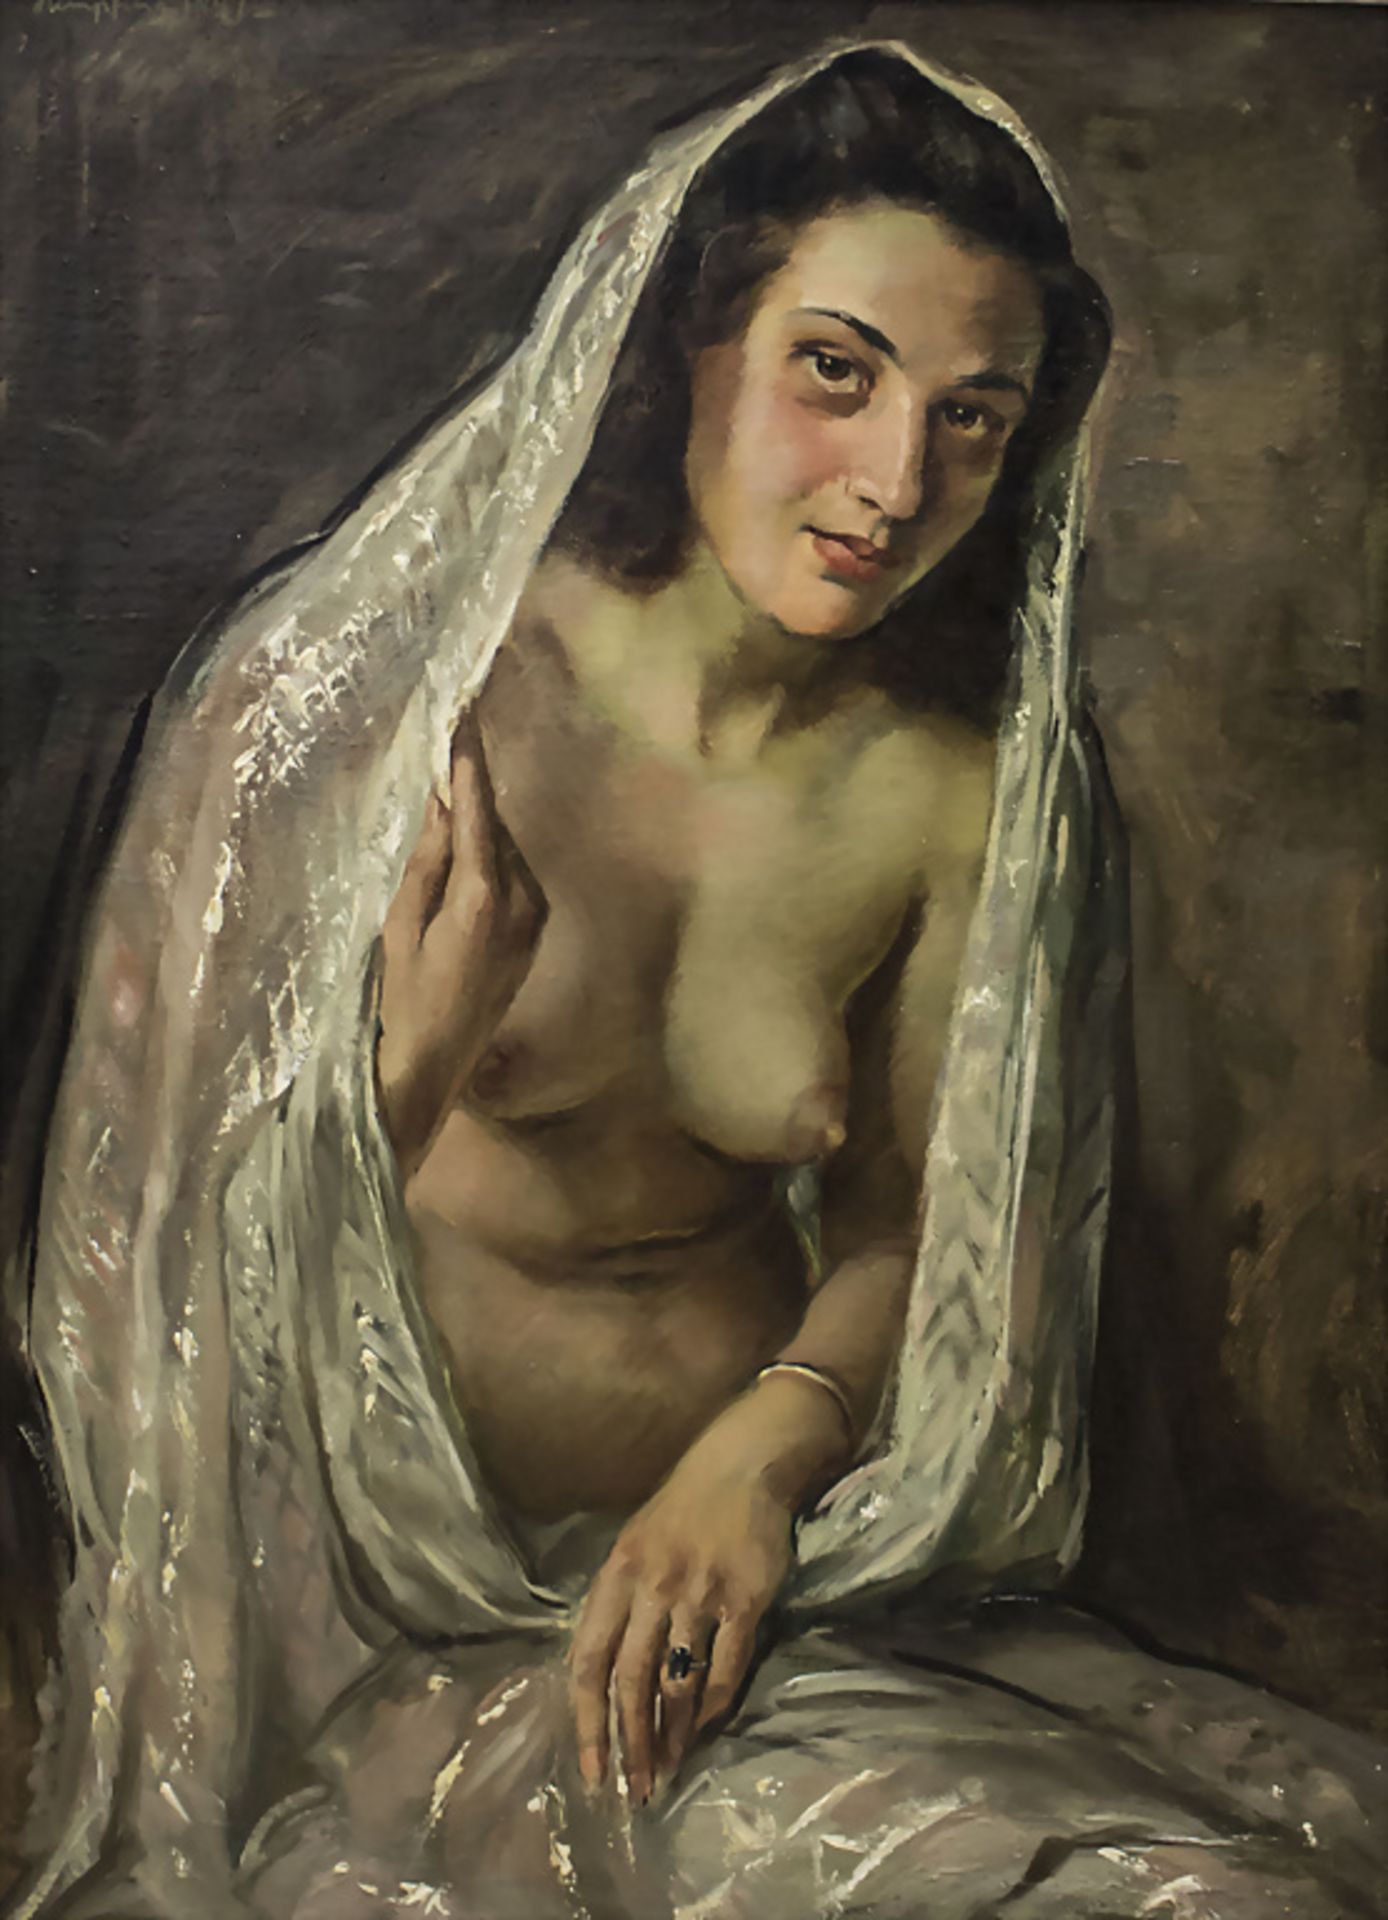 Wilhelm HEMPFING (1886-1948/51), 'Ein erotischer (An-)Blick' / 'An erotic view', 1947